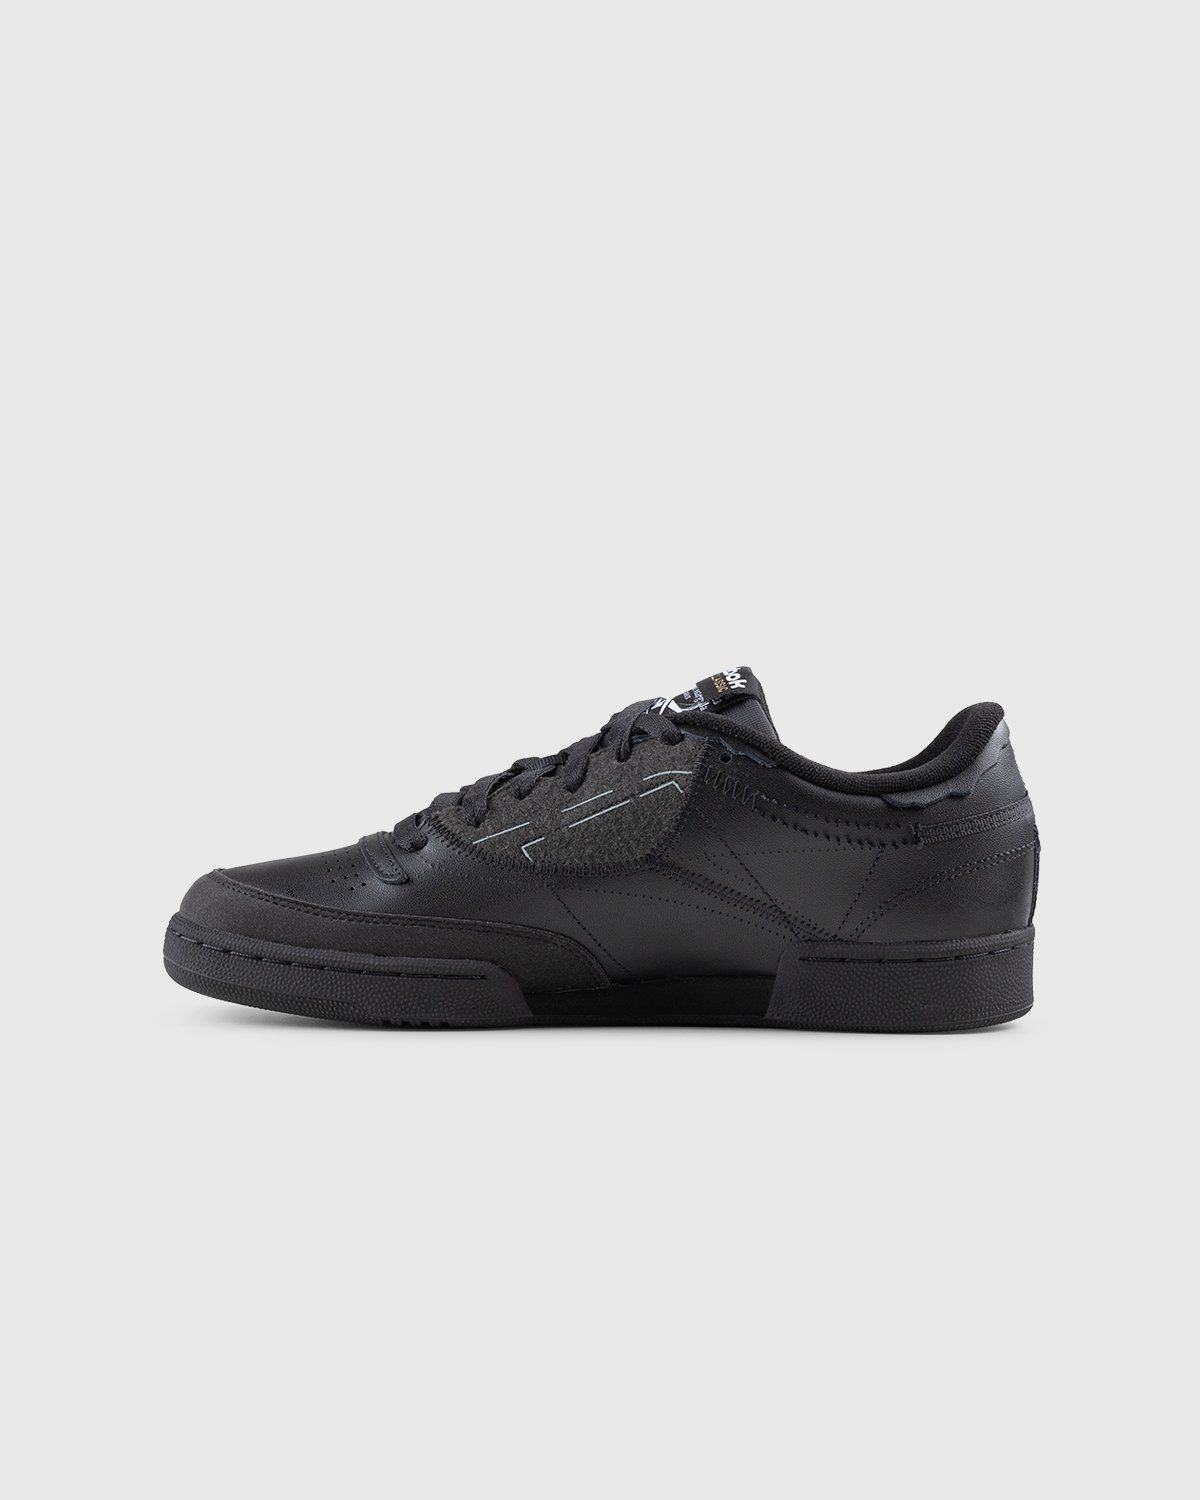 Maison Margiela x Reebok – Club C Memory Of Black/Footwear White/Black - Low Top Sneakers - Black - Image 2